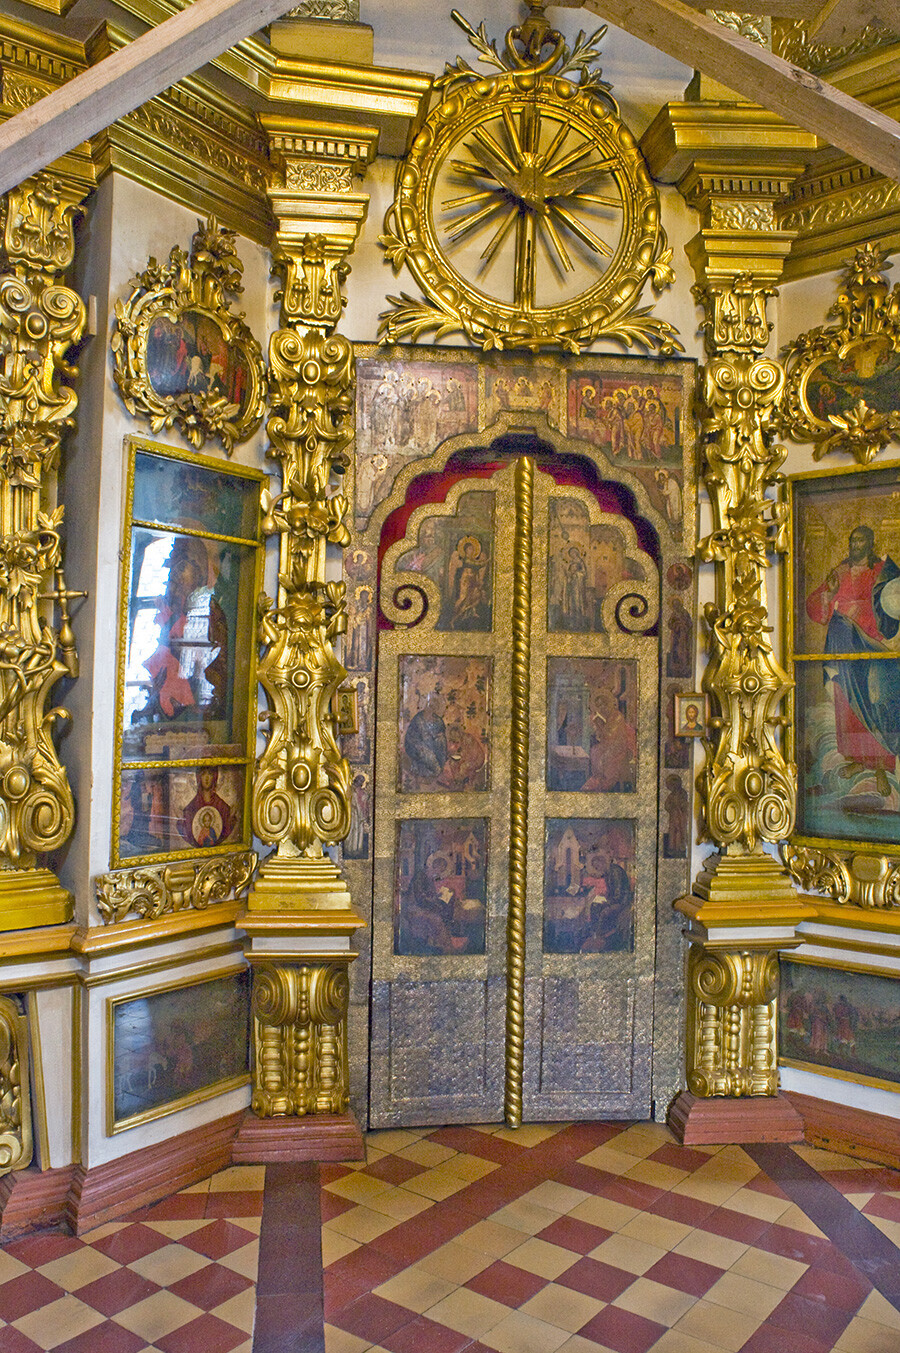 Monastère de l'Annonciation. Cathédrale de l'Annonciation, porte royale de l’iconostase (entrée de l'autel principal). 16 août 2012